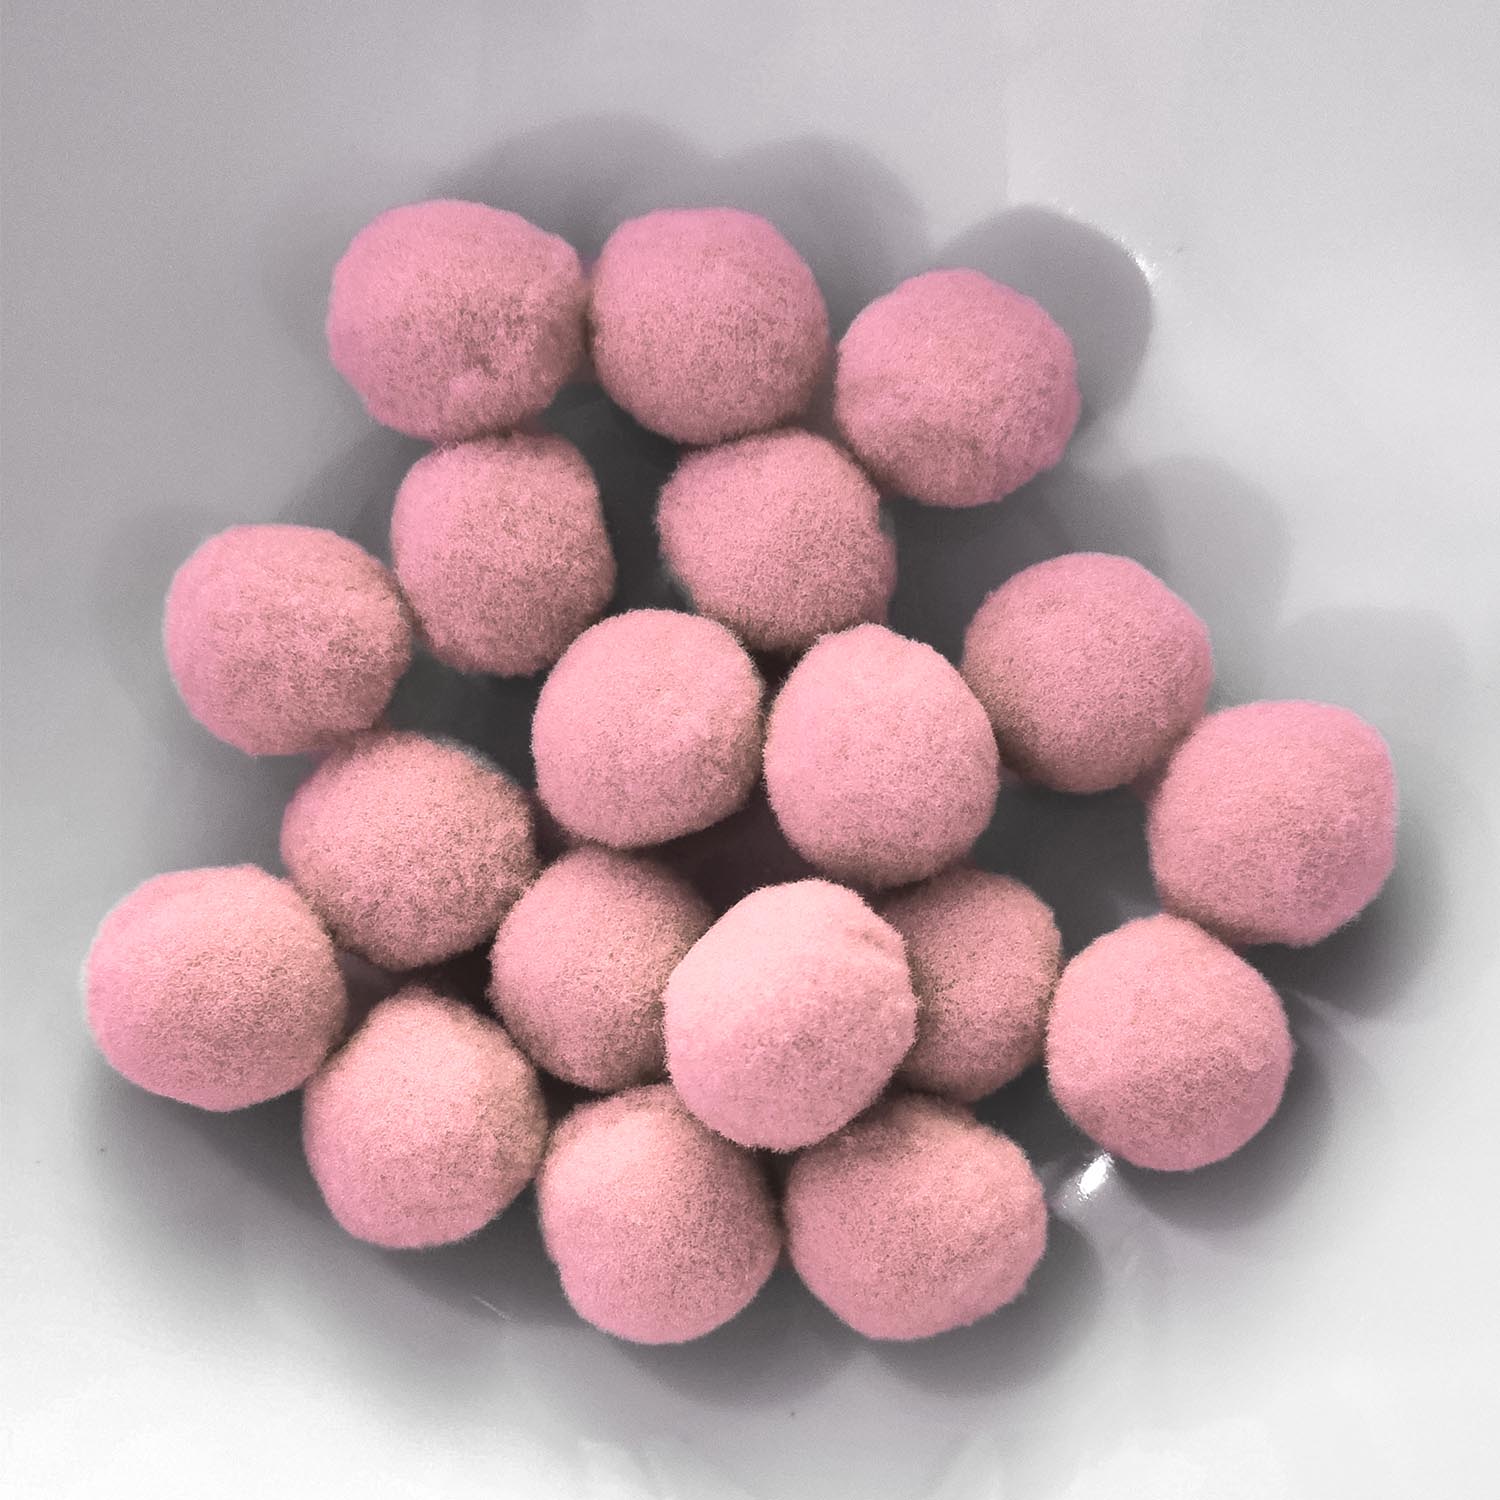 PomPon / Bälle aus Baumwolle - 25 mm / 20er Set - Rosa hell